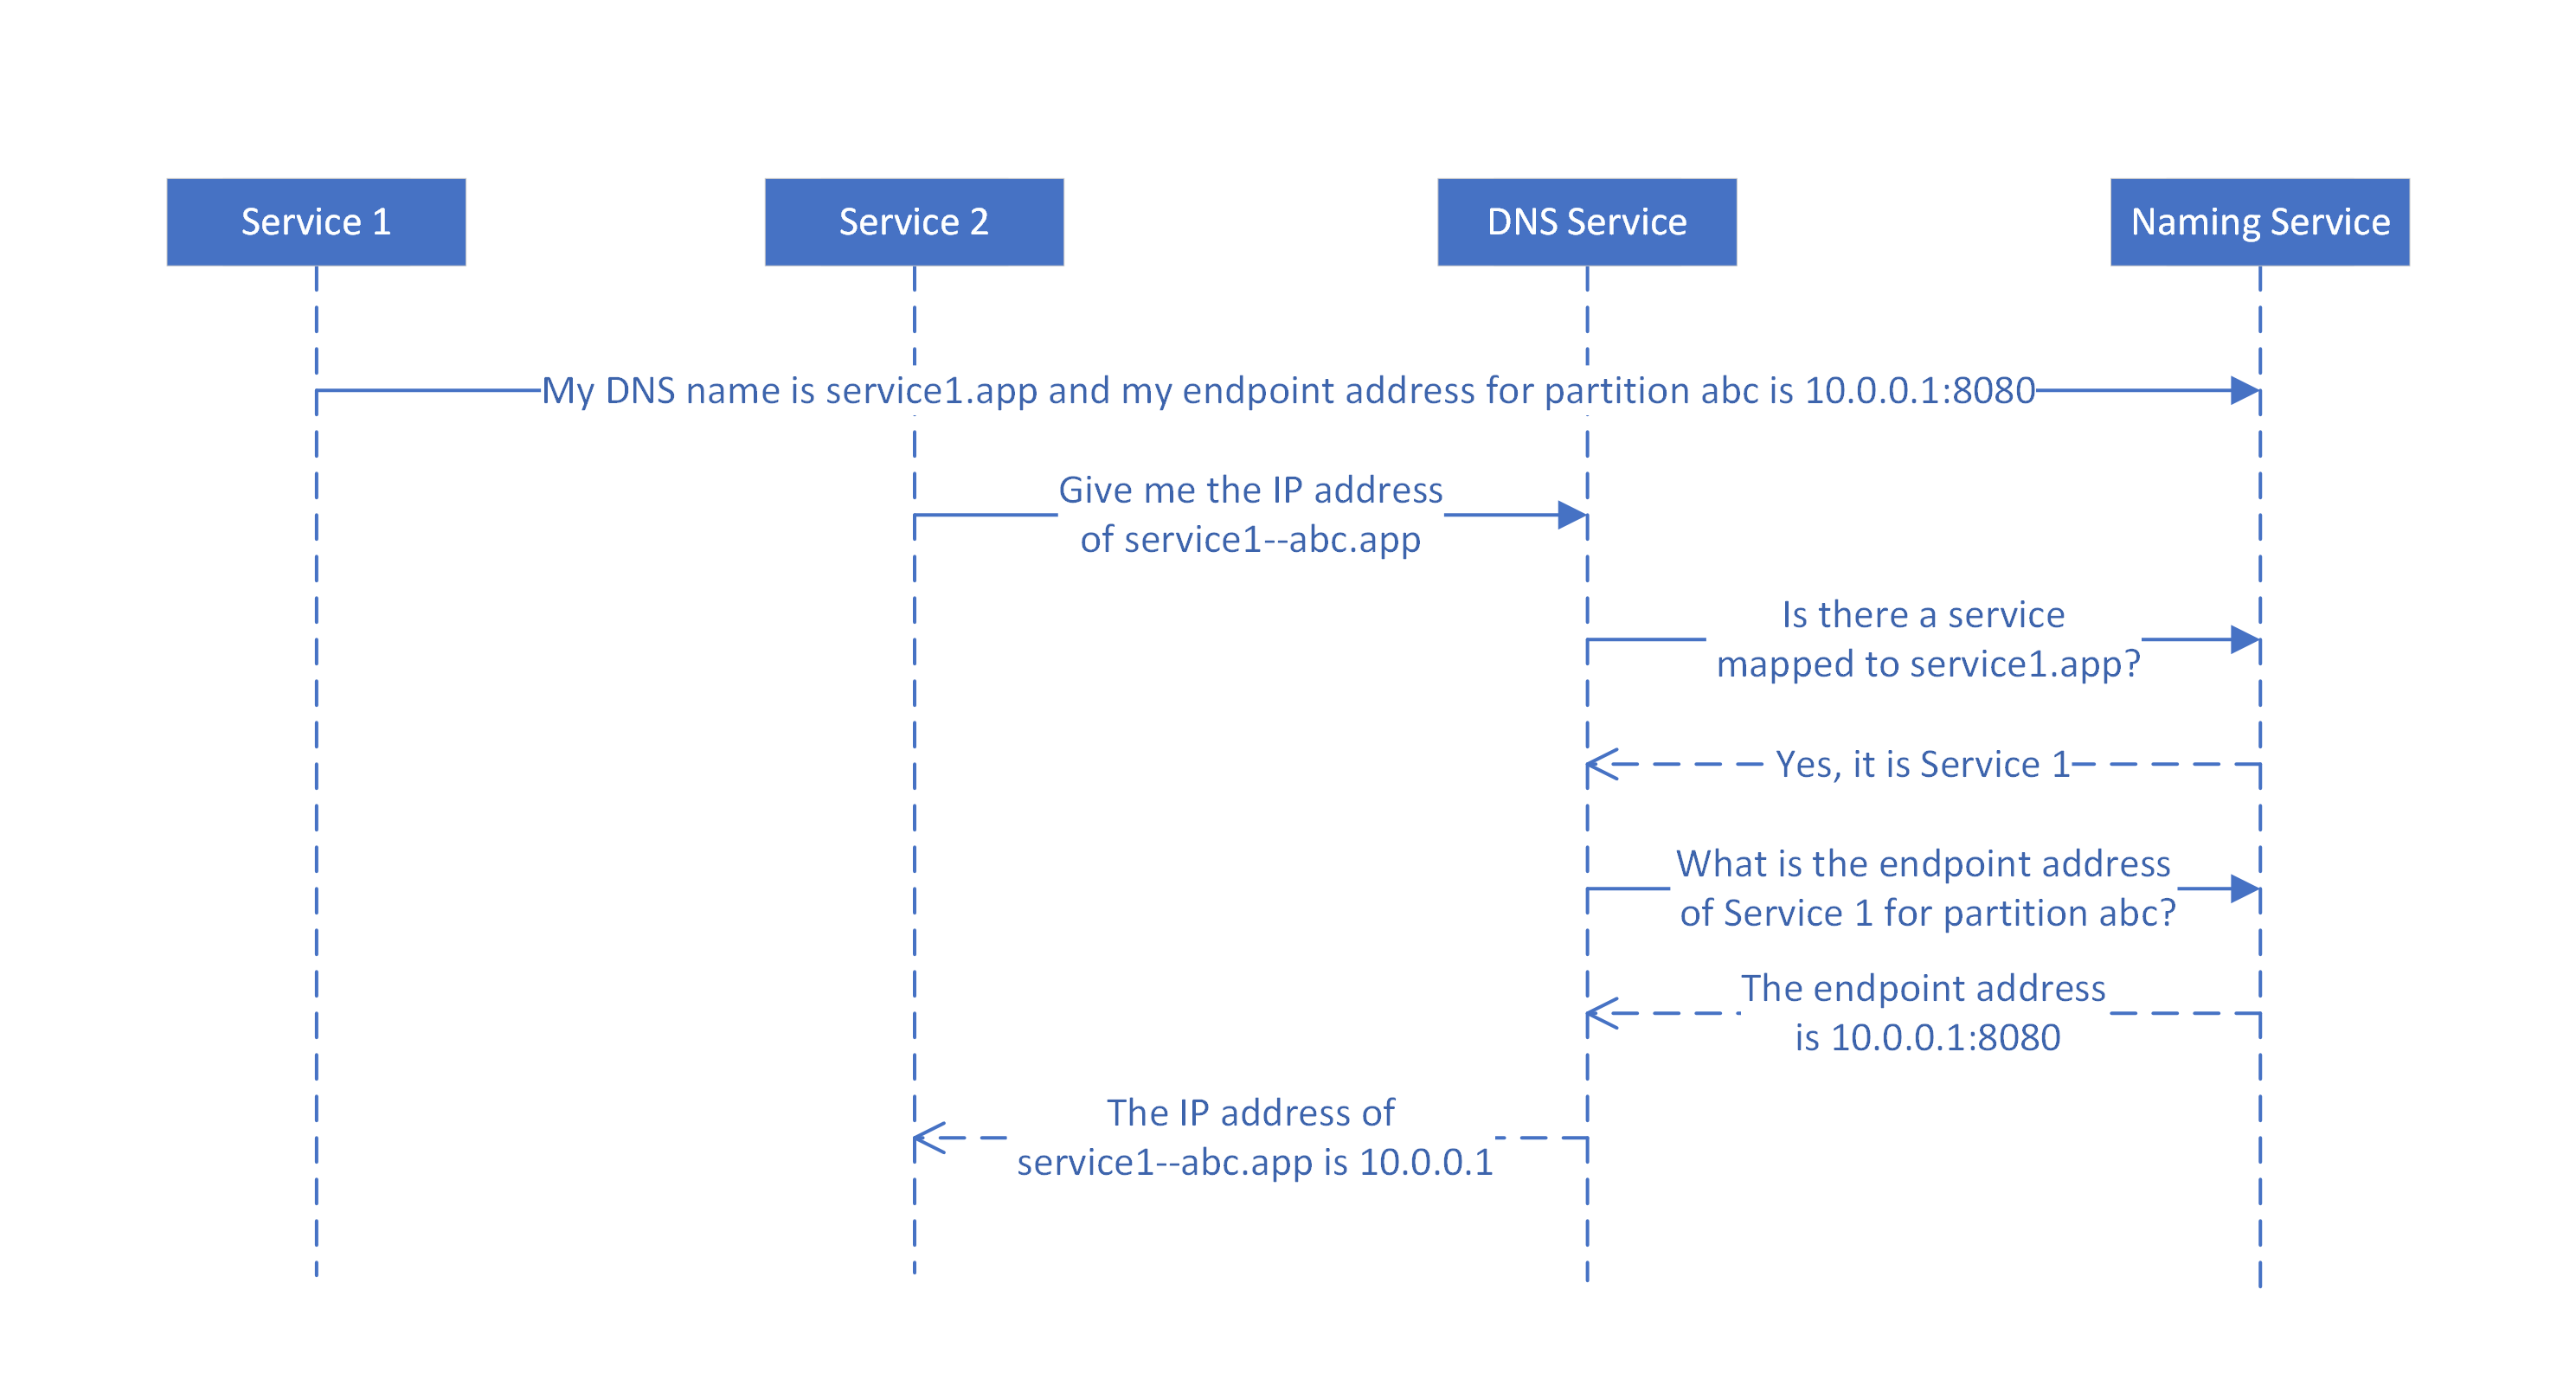 Diagram przedstawiający sposób mapowania nazw DNS na nazwy usług według usługi DNS dla partycjonowanych usług stanowych.